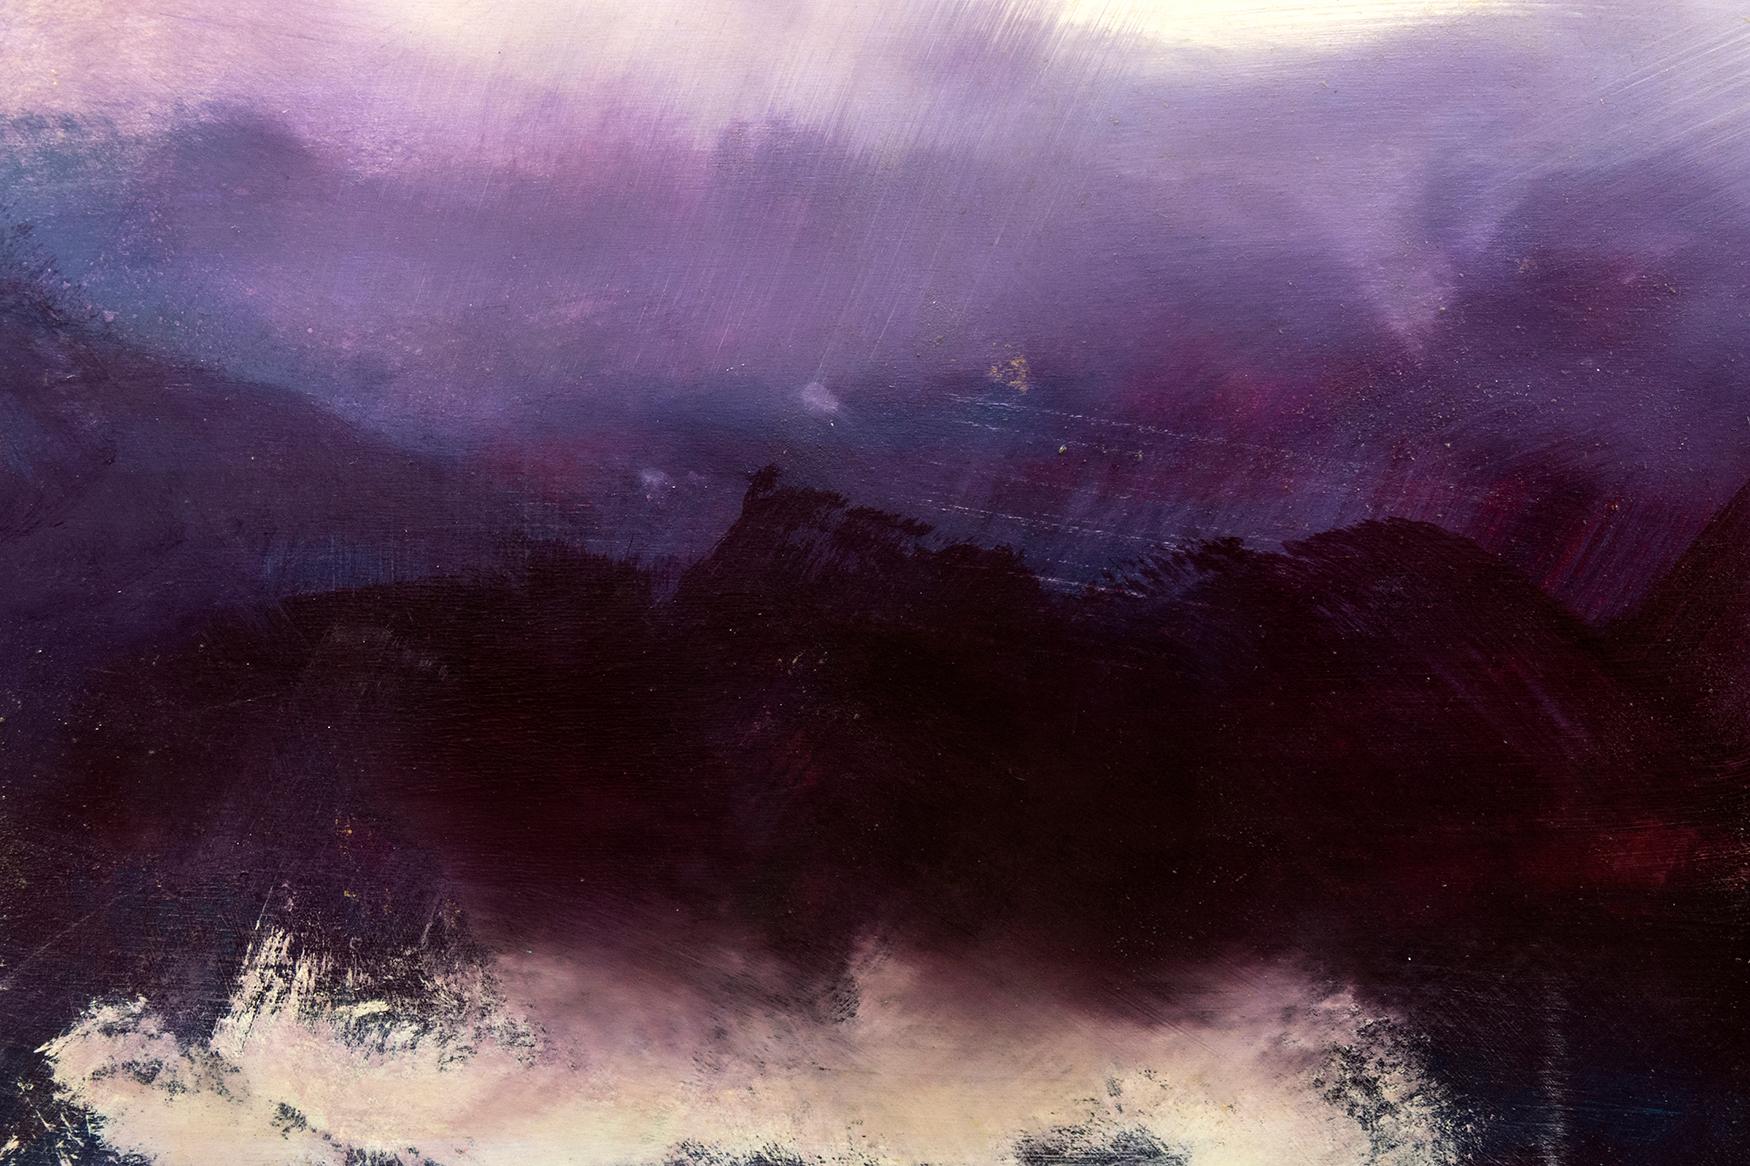 Dunkle Wolken an einem stürmischen Horizont treffen auf einen violetten Himmel in diesem gefühlvollen Diptychon von Jay Hodgins. Schichten von kuratierten Farben, die mit einem glänzenden Harz überzogen sind, schaffen Tiefe und Licht in dem